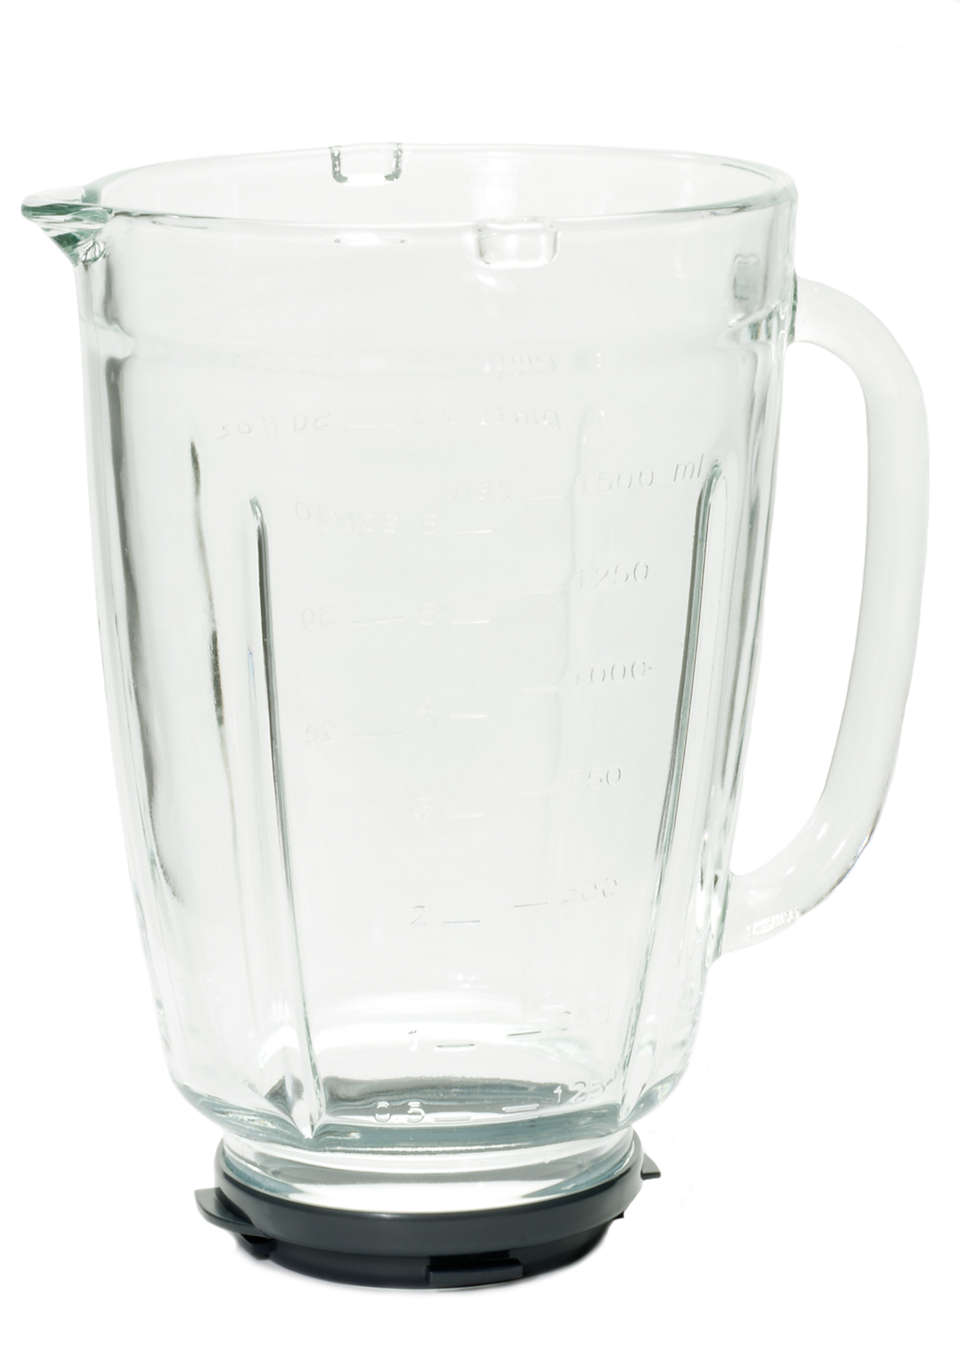 Glass beaker for your blender